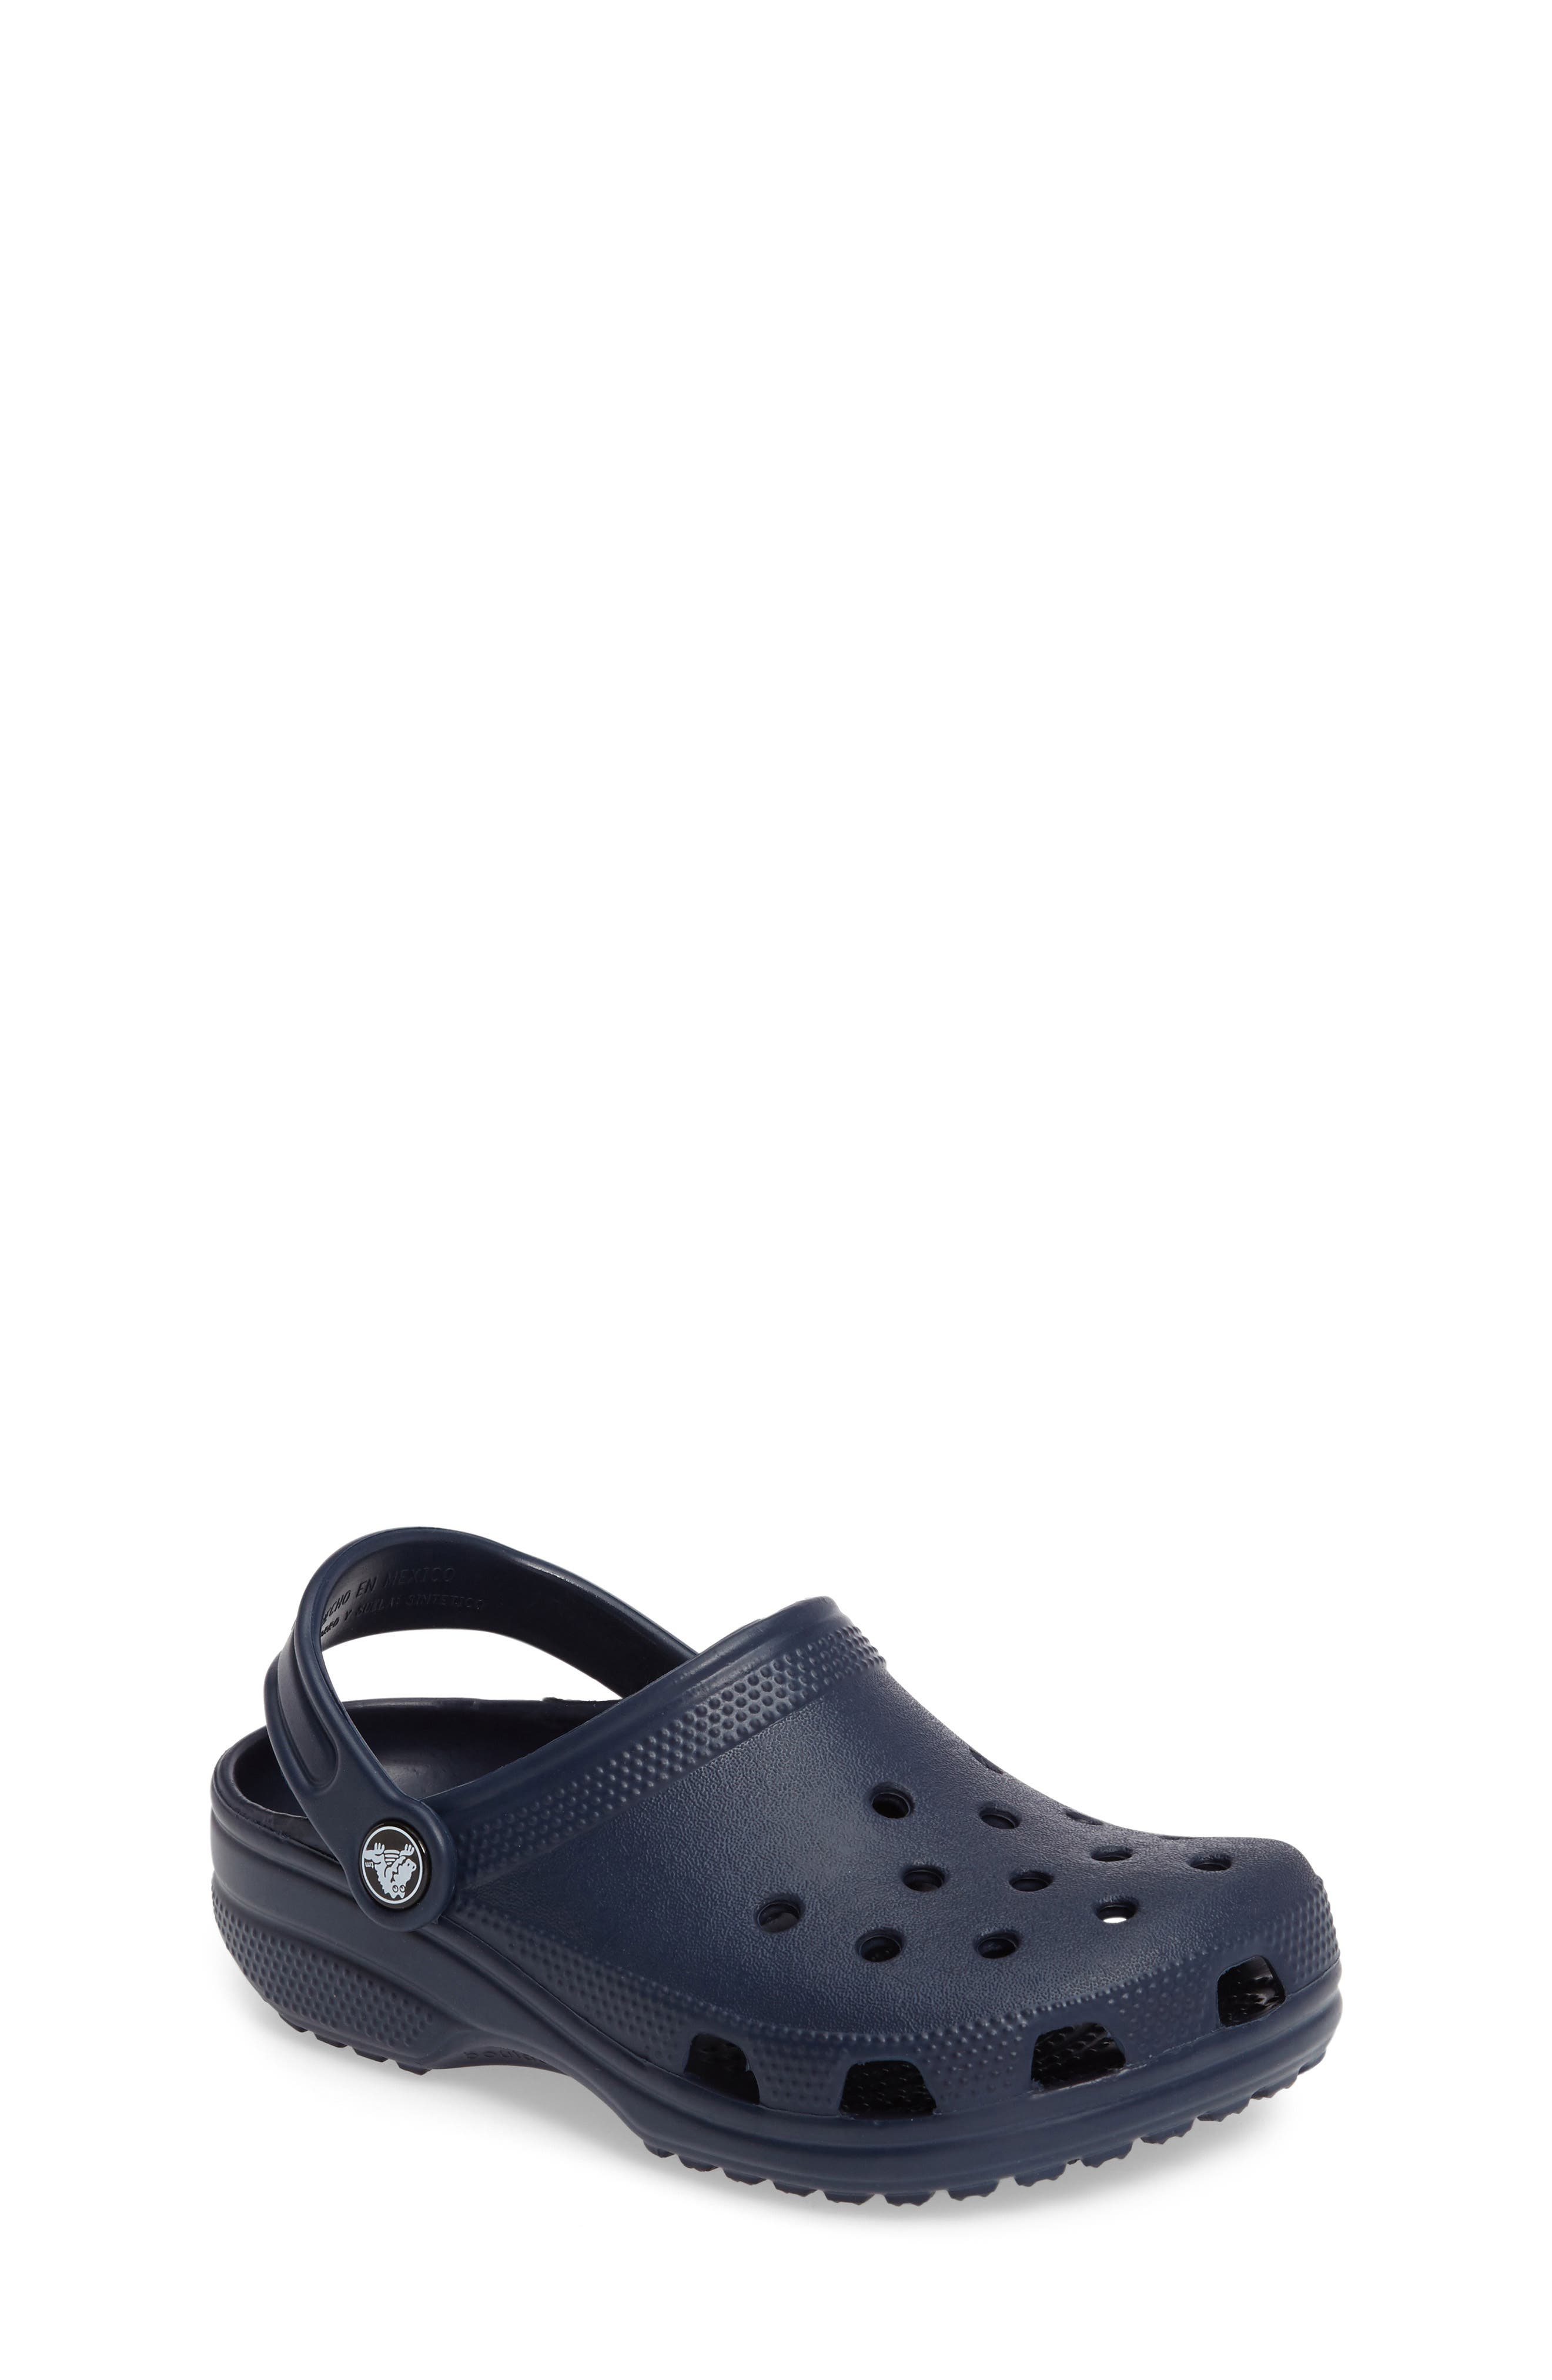 crocs maternity clog shoes slip on